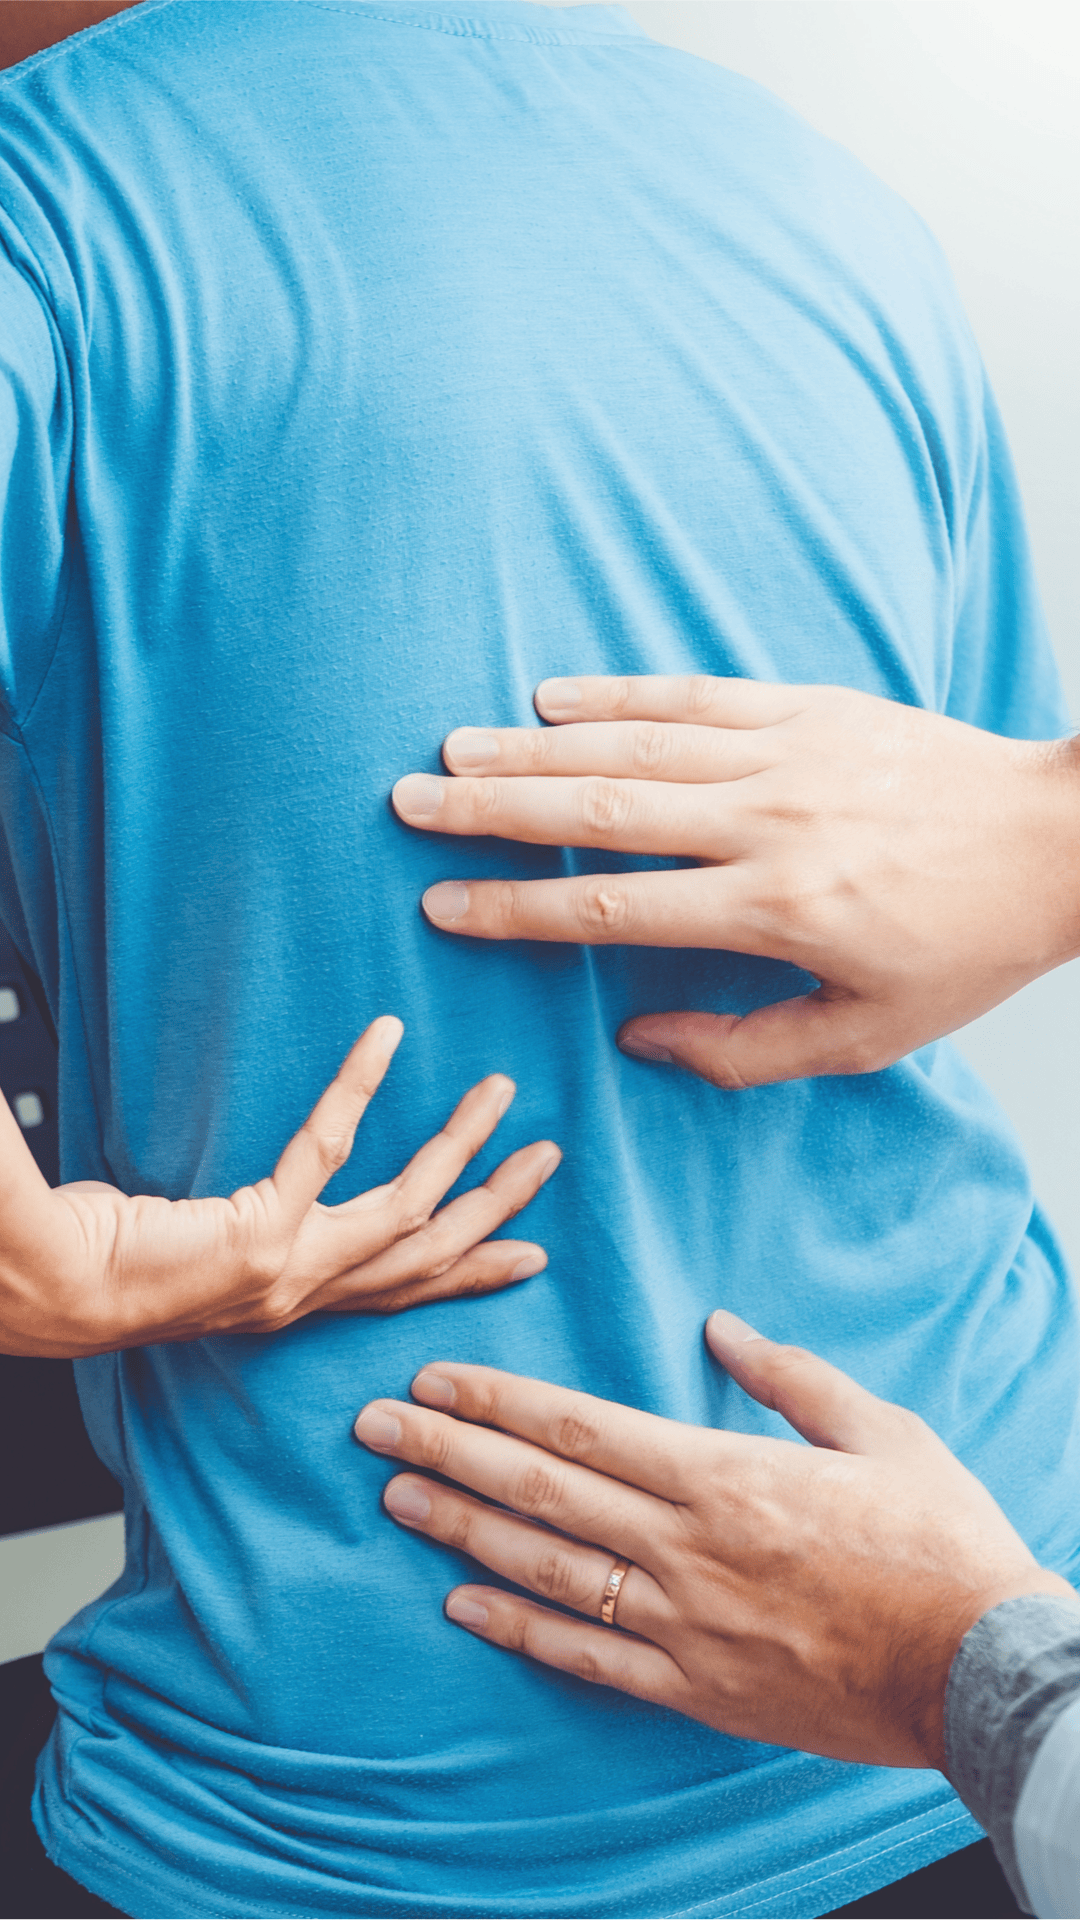 durere severă la nivelul coloanei vertebrale în zona lombară